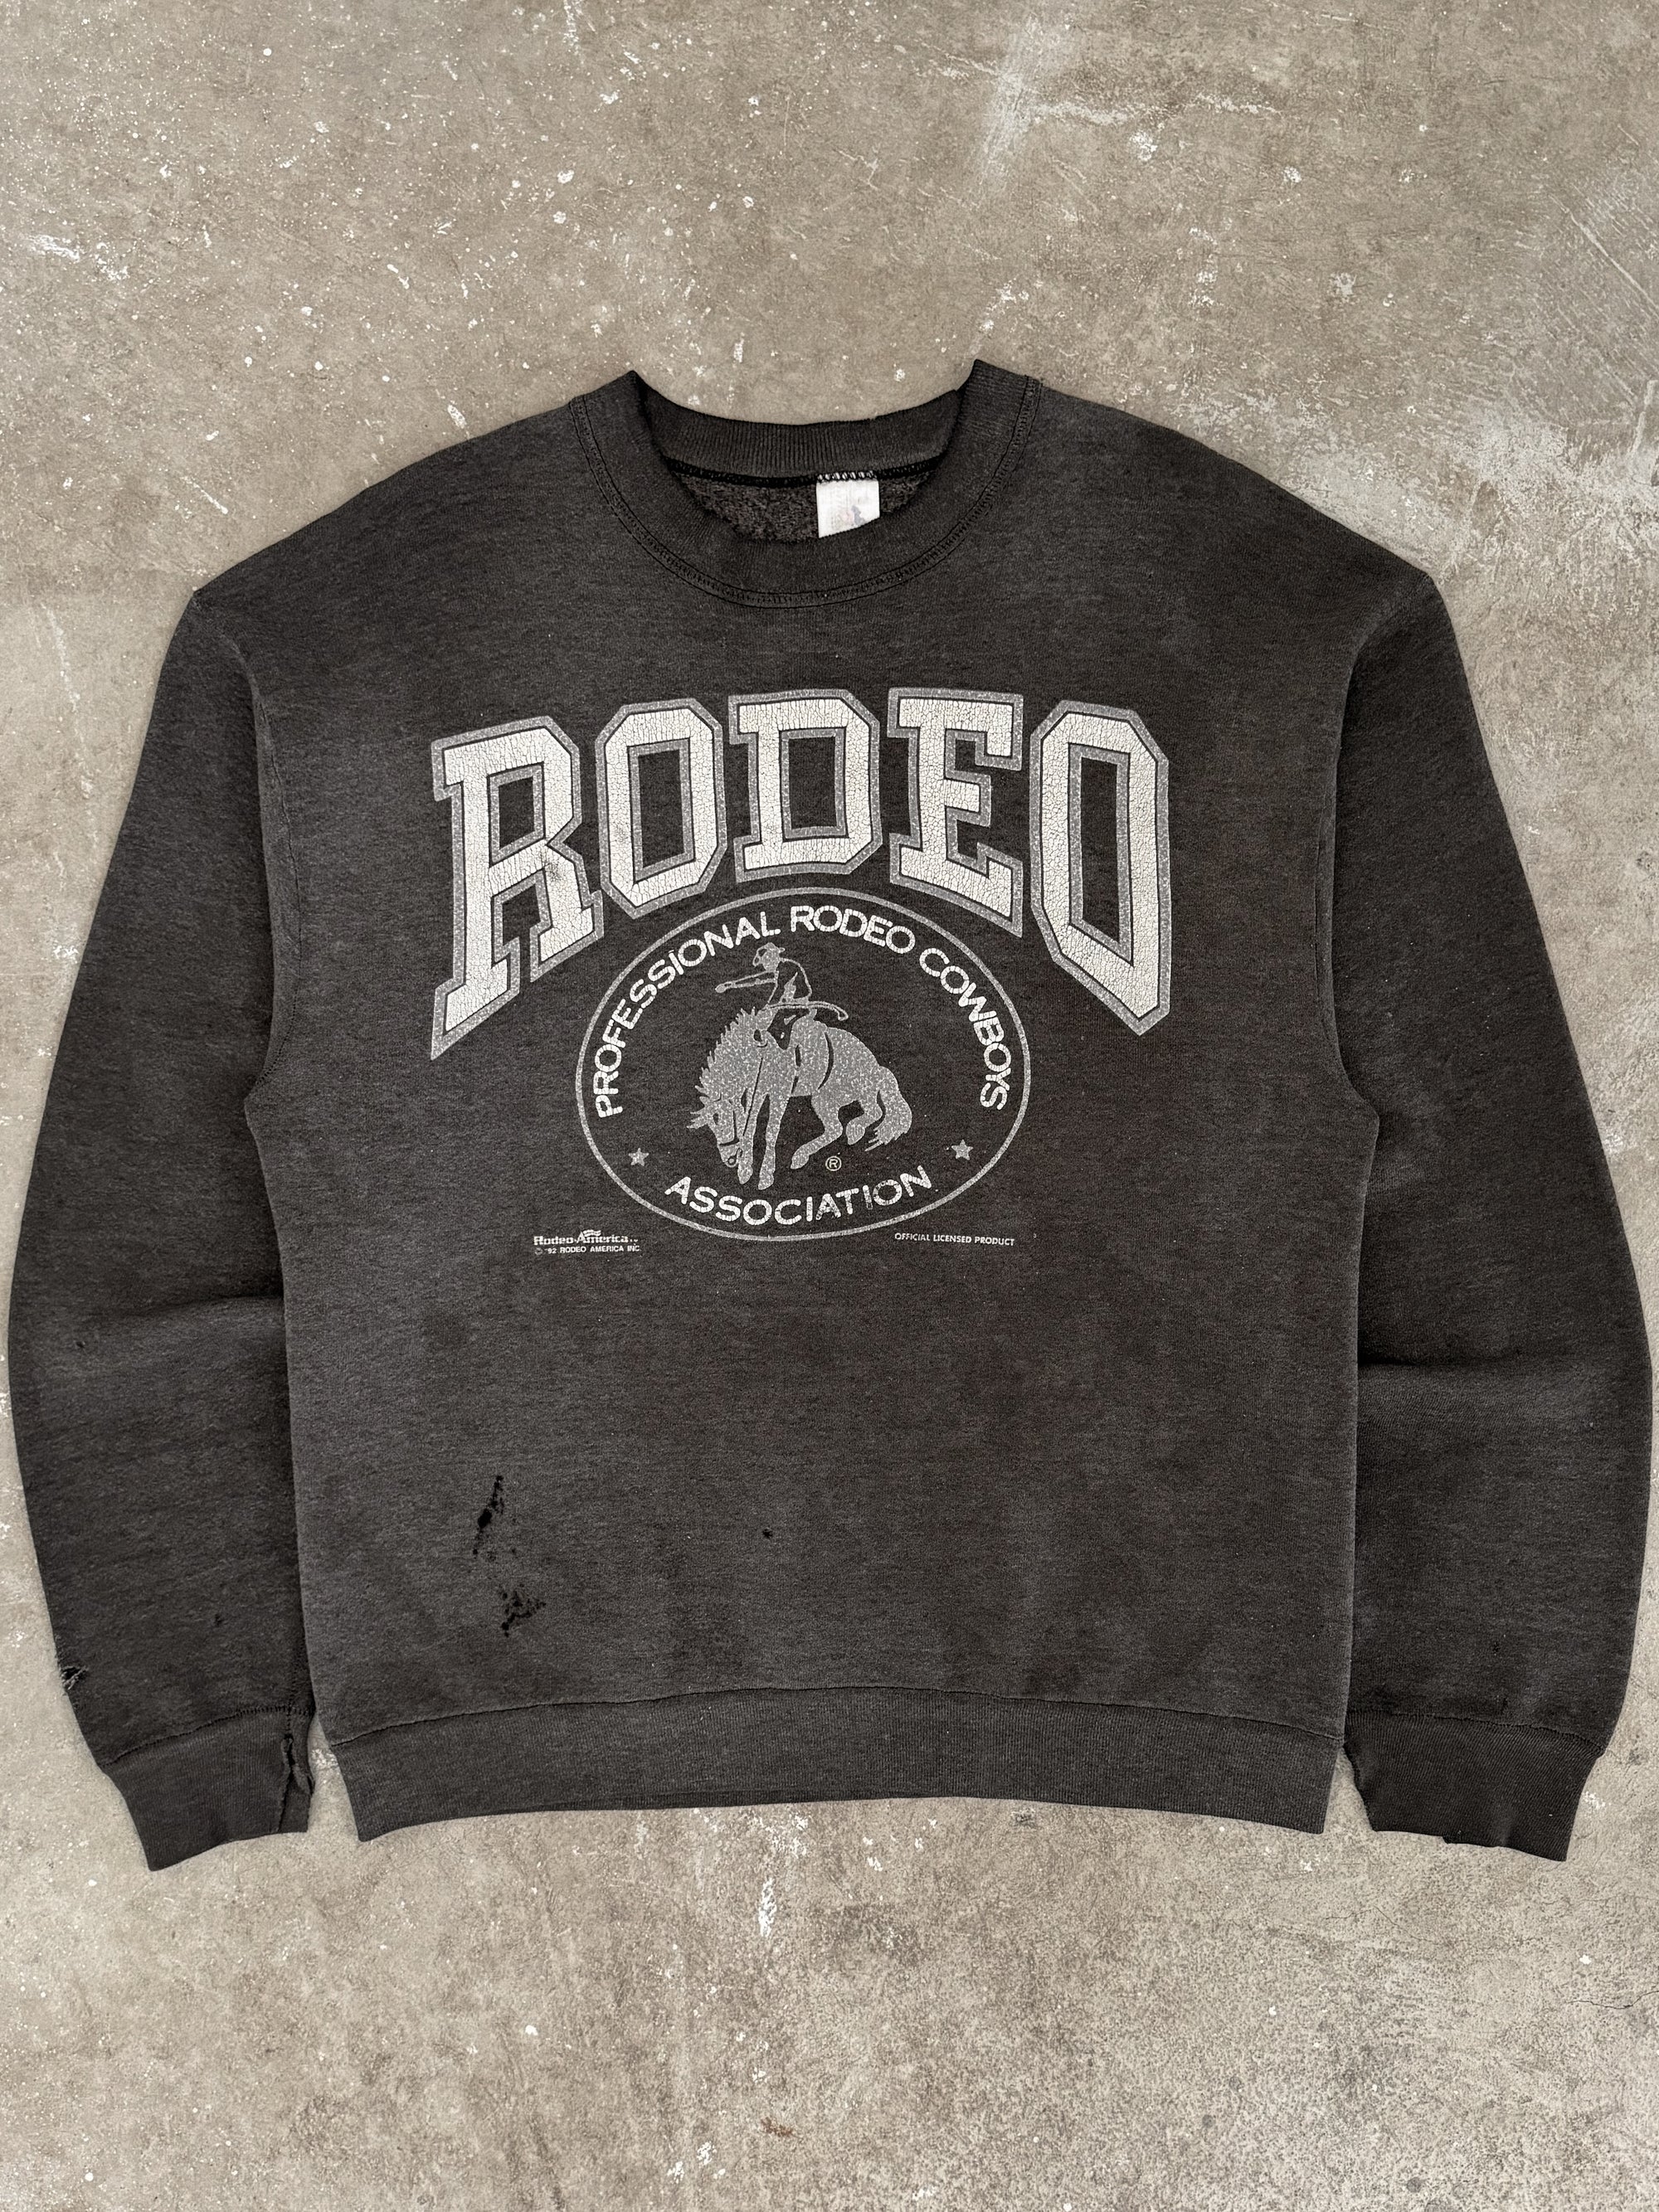 1990s "Rodeo" Sweatshirt (M)